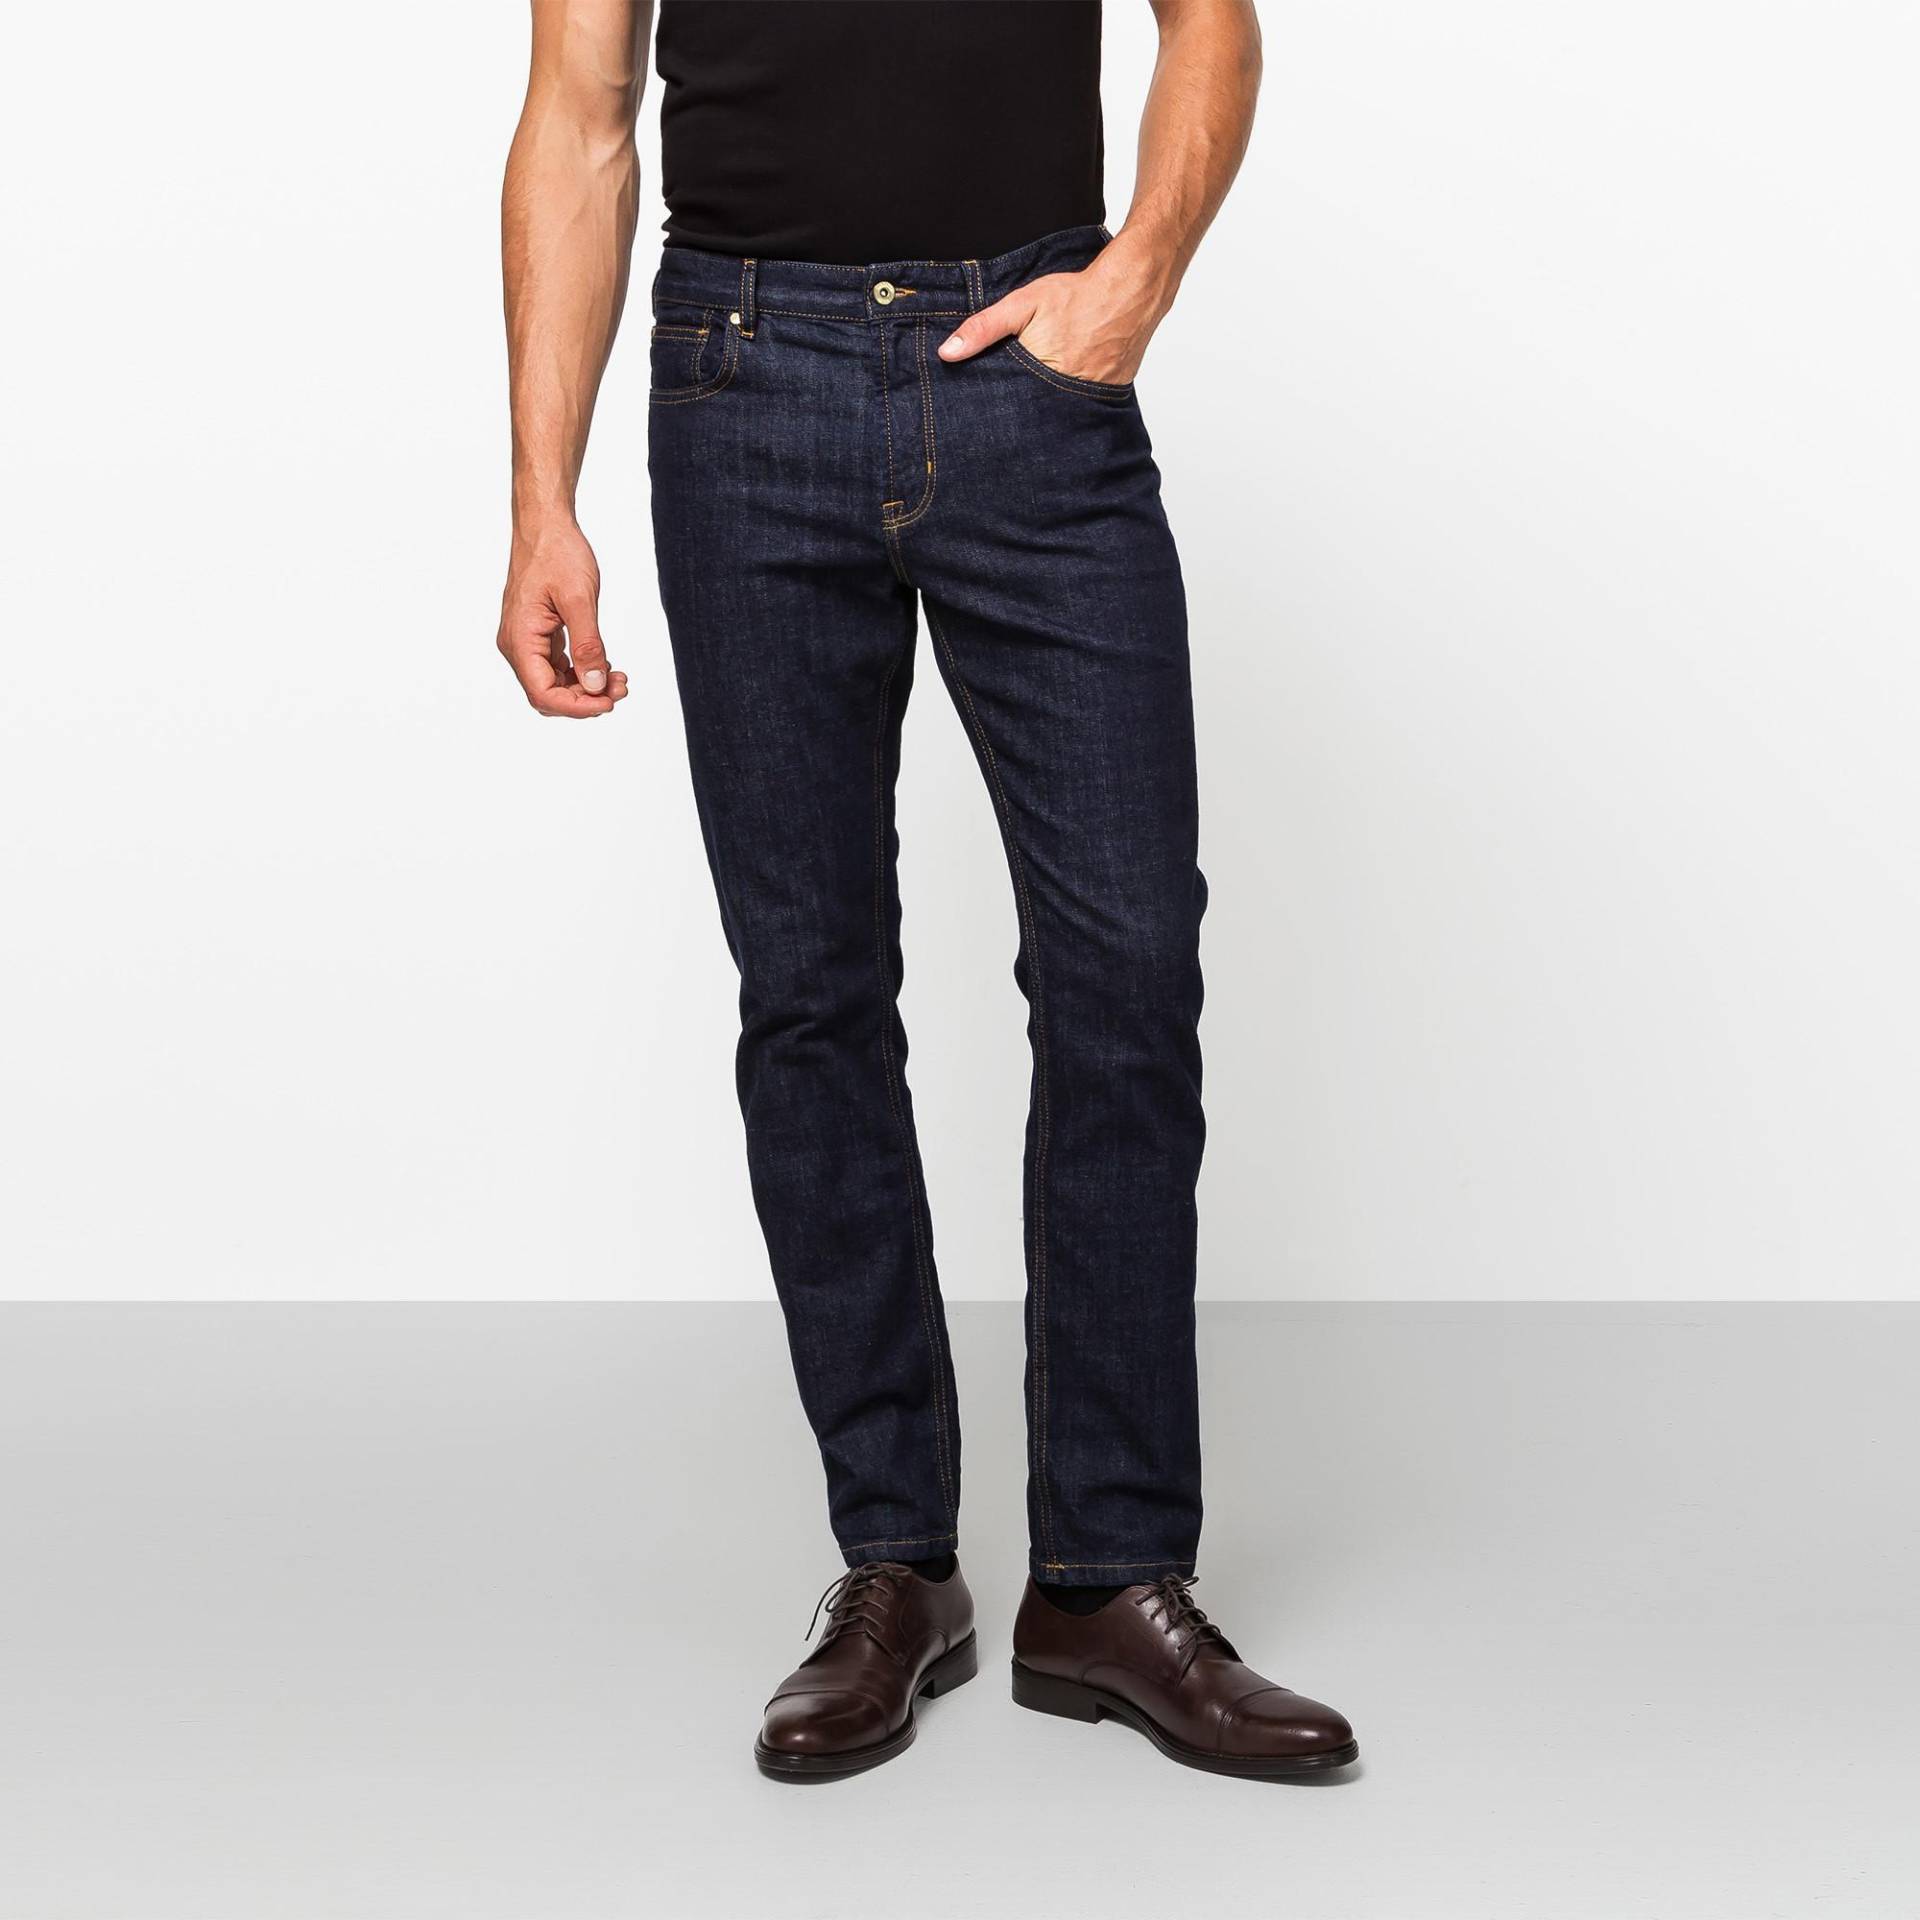 Jeans, Slim Fit Herren Blau Denim Dunkel L32/W30 von Manor Man